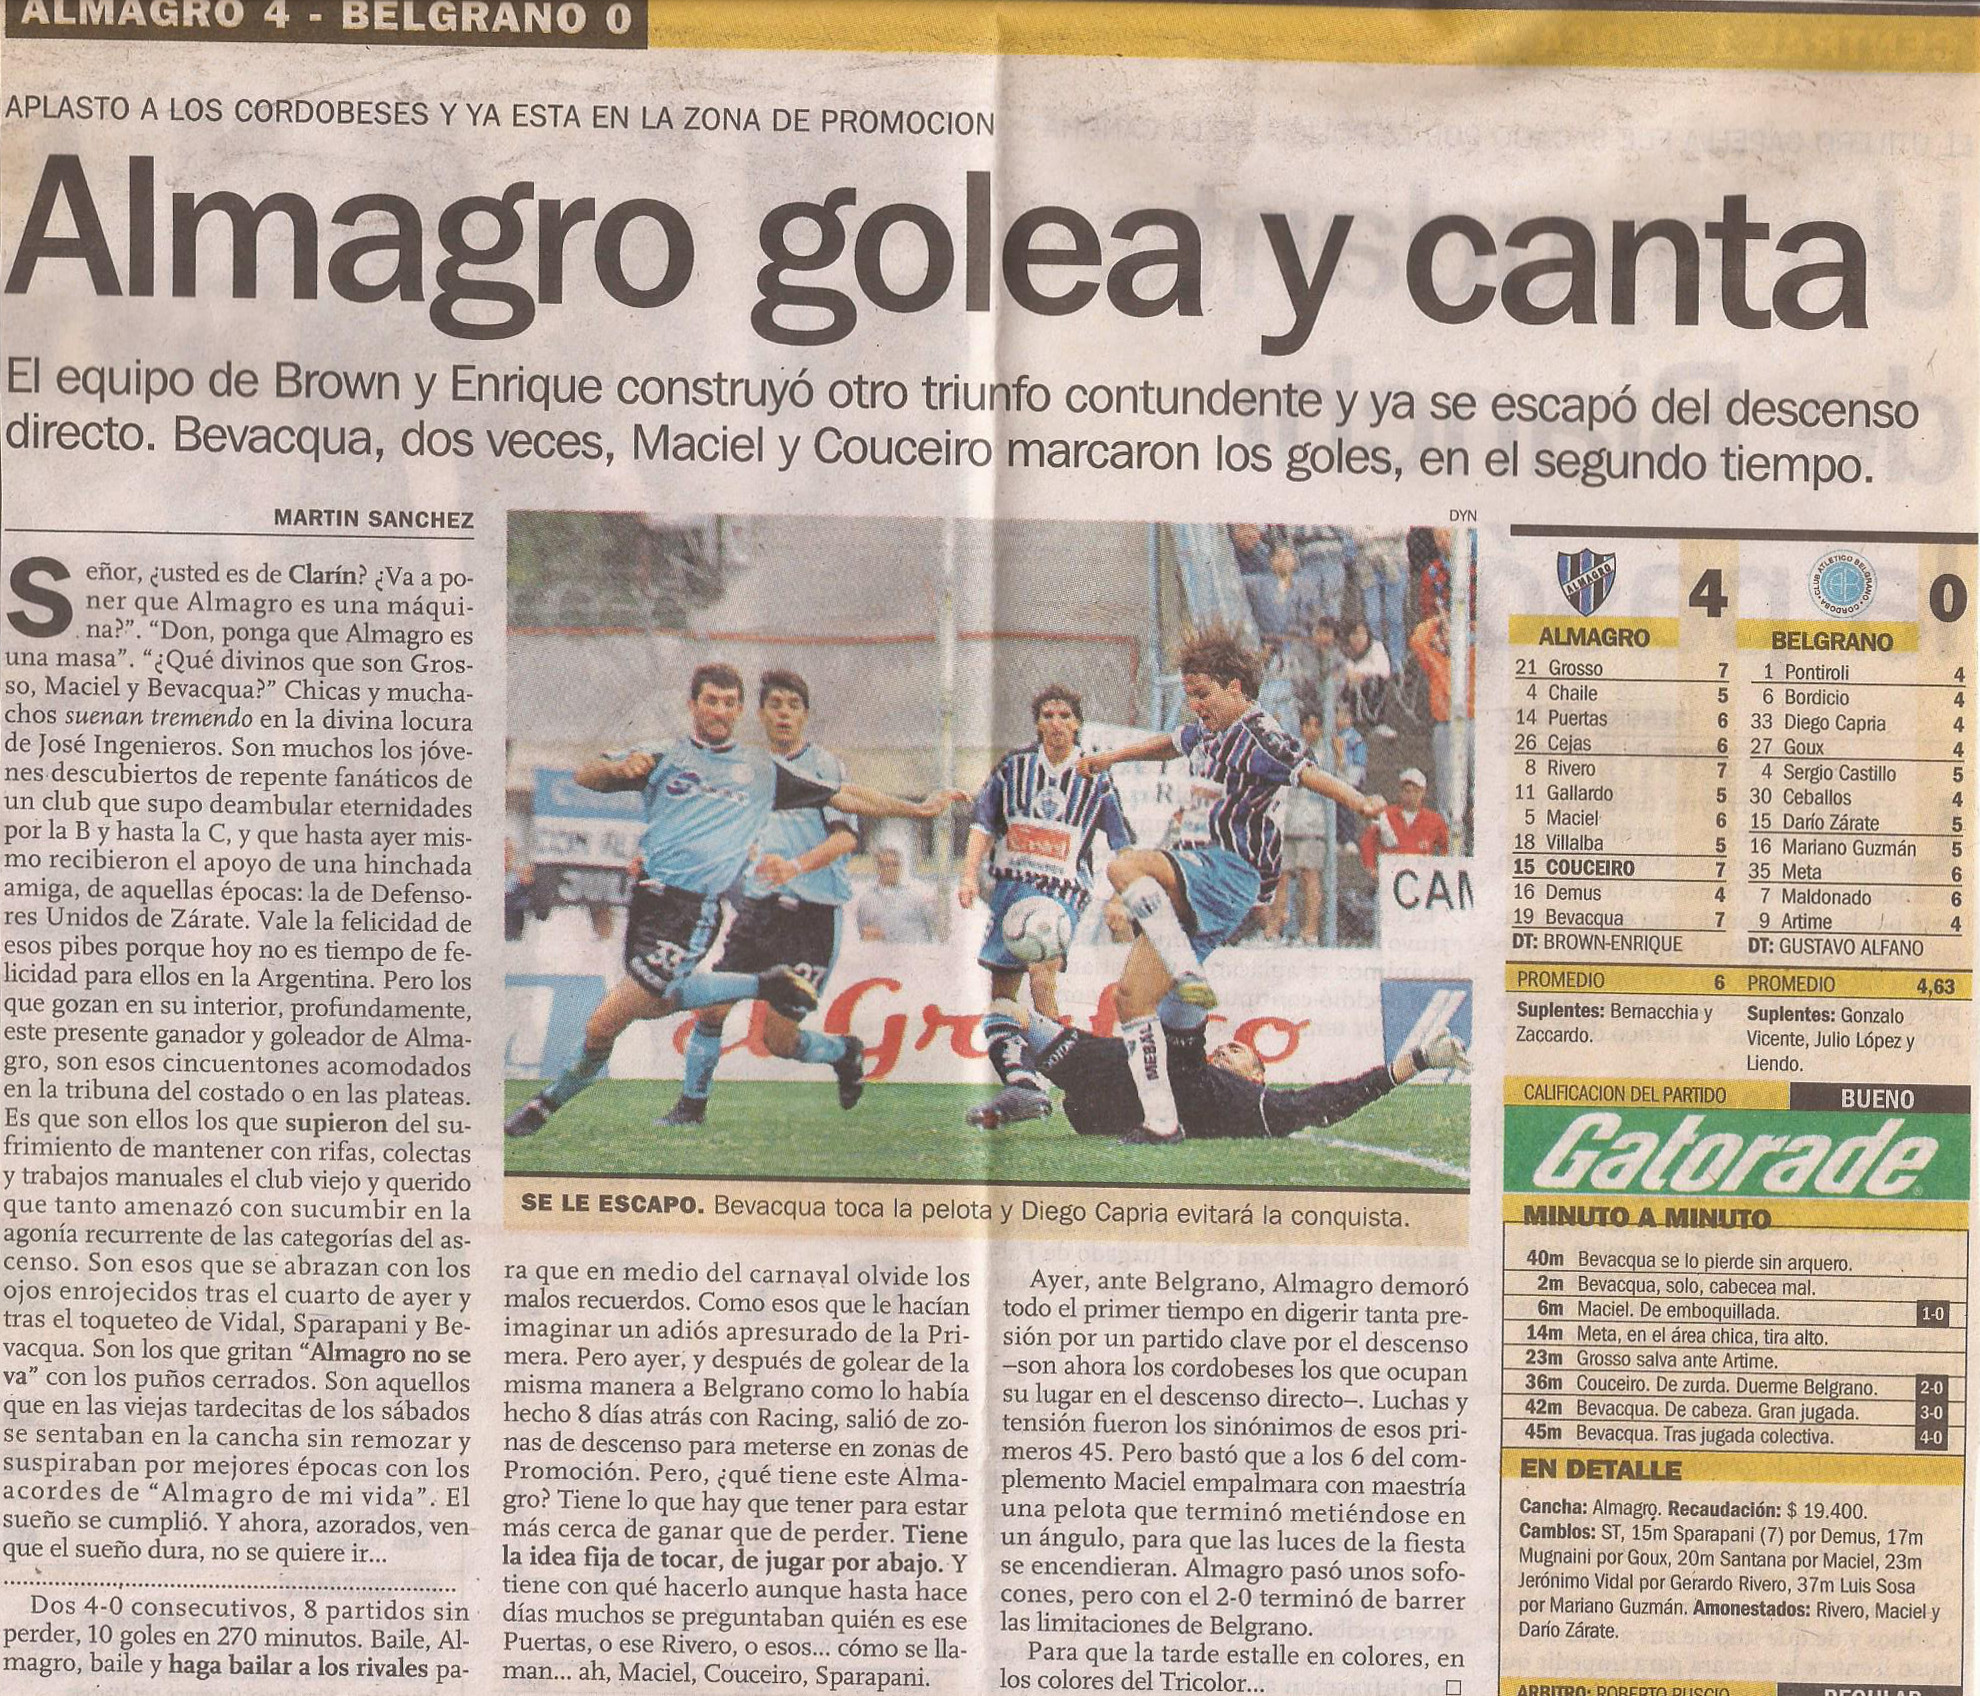 2000-01 Primera Division - Almagro vs Belgrano - Diario Ole